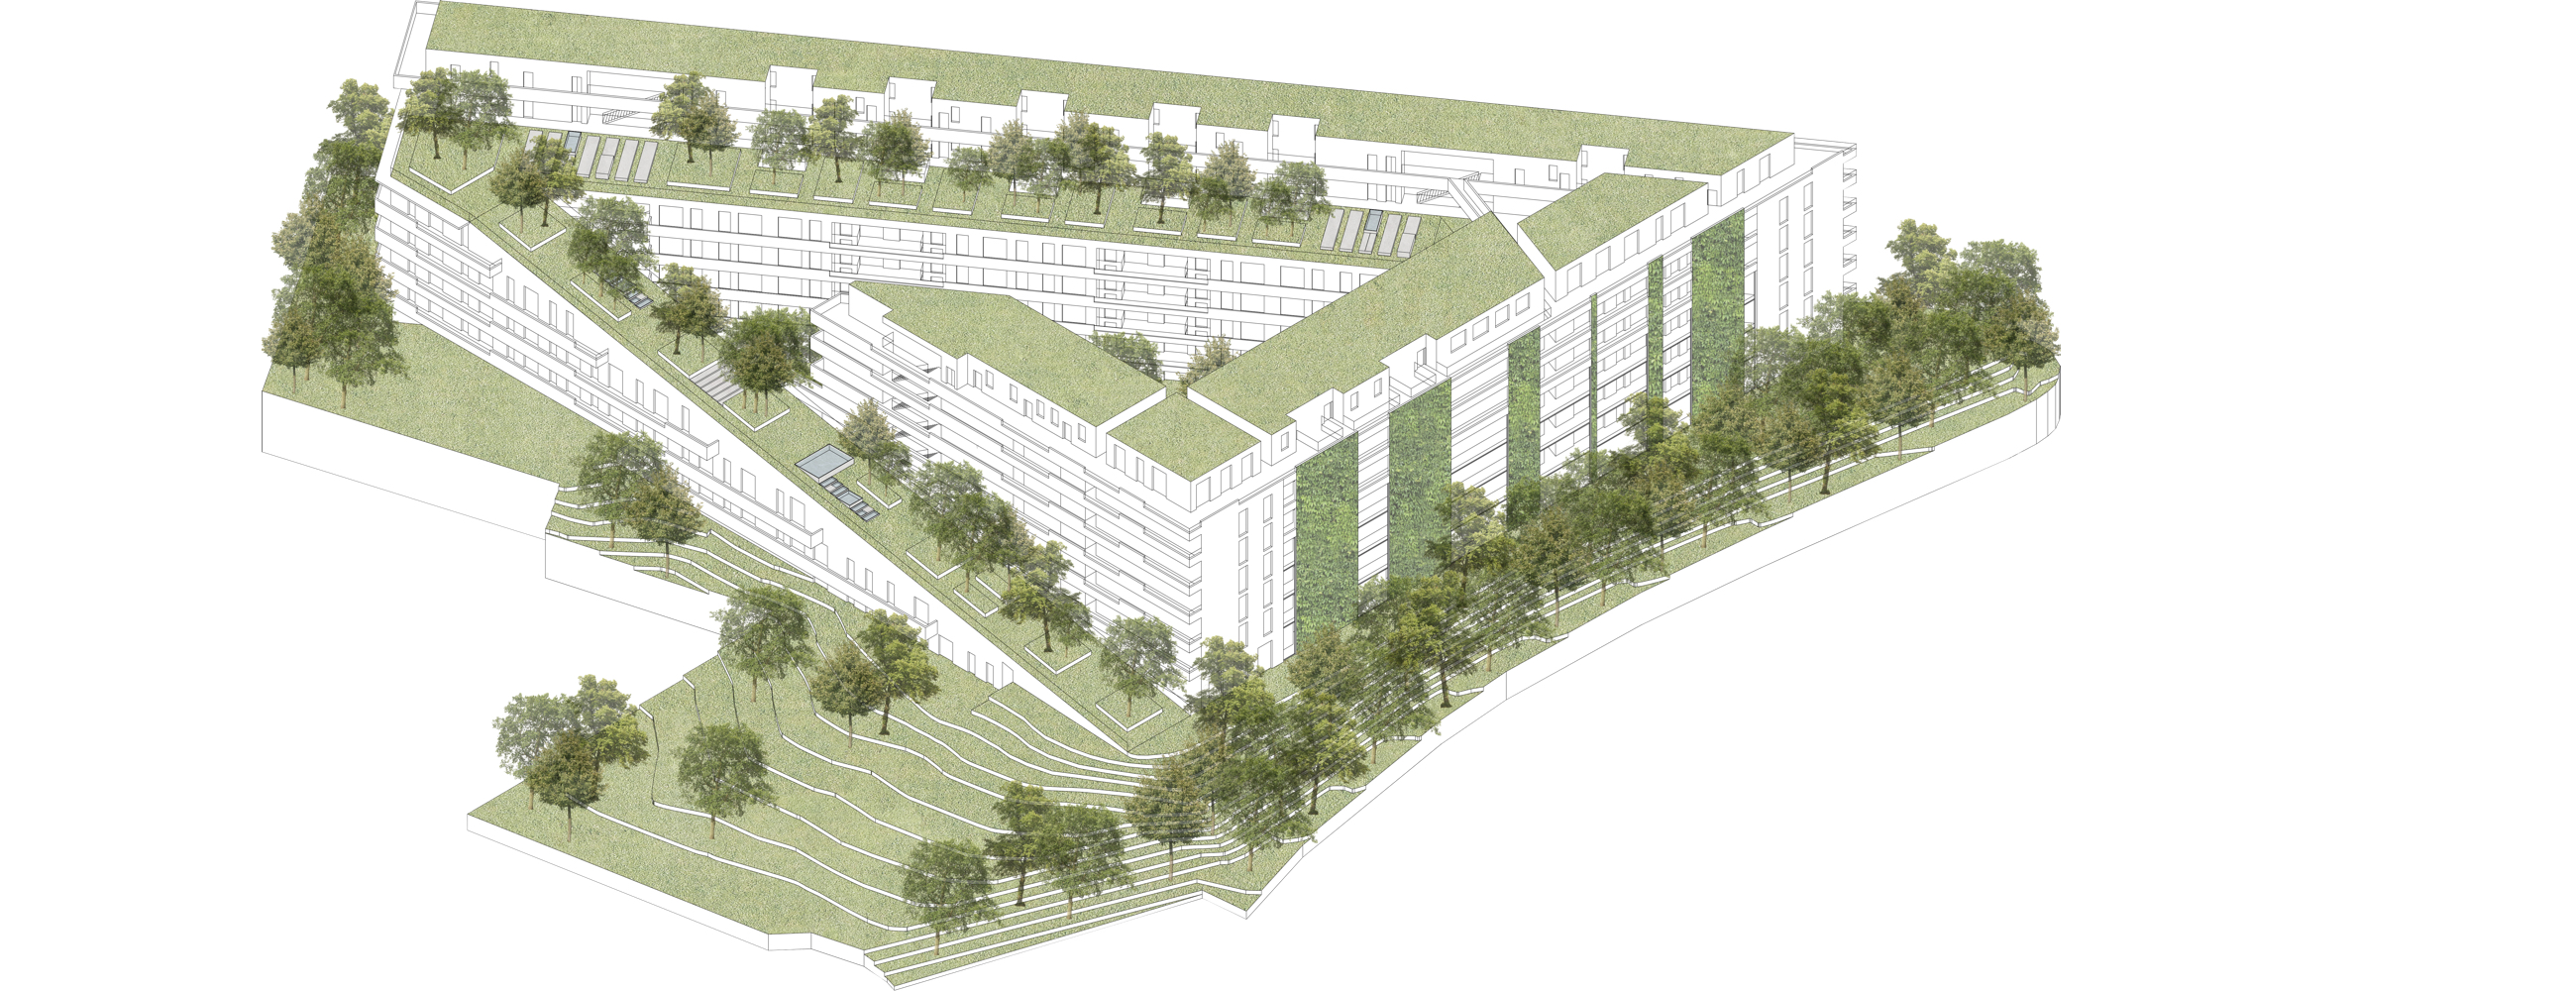 GWS-Projekt: LENDPARK in Graz, Lend. 282 freifinanzierte Eigentumswohnungen. Wohnanlage mit Dachgärten und begrünter Fassade.